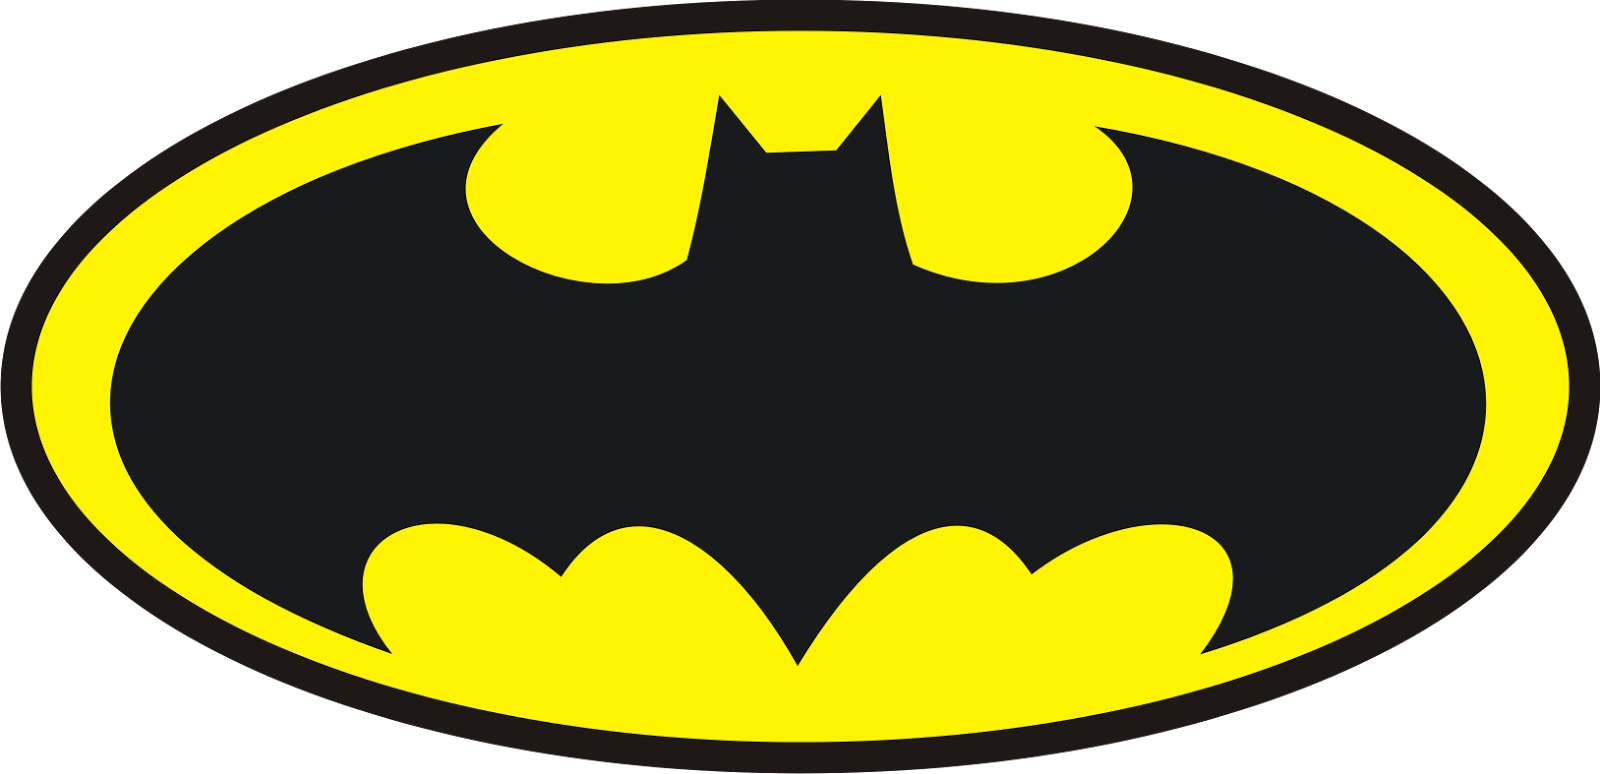 Batman Logo Clip art - Batman Logo Png png download - 1600*774 - Free ...